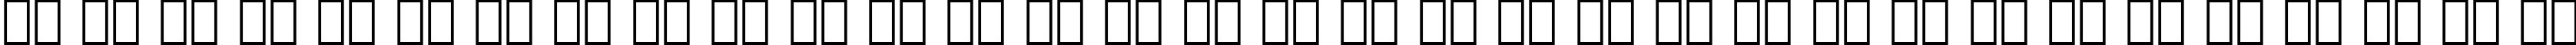 Пример написания русского алфавита шрифтом Square 721 BT